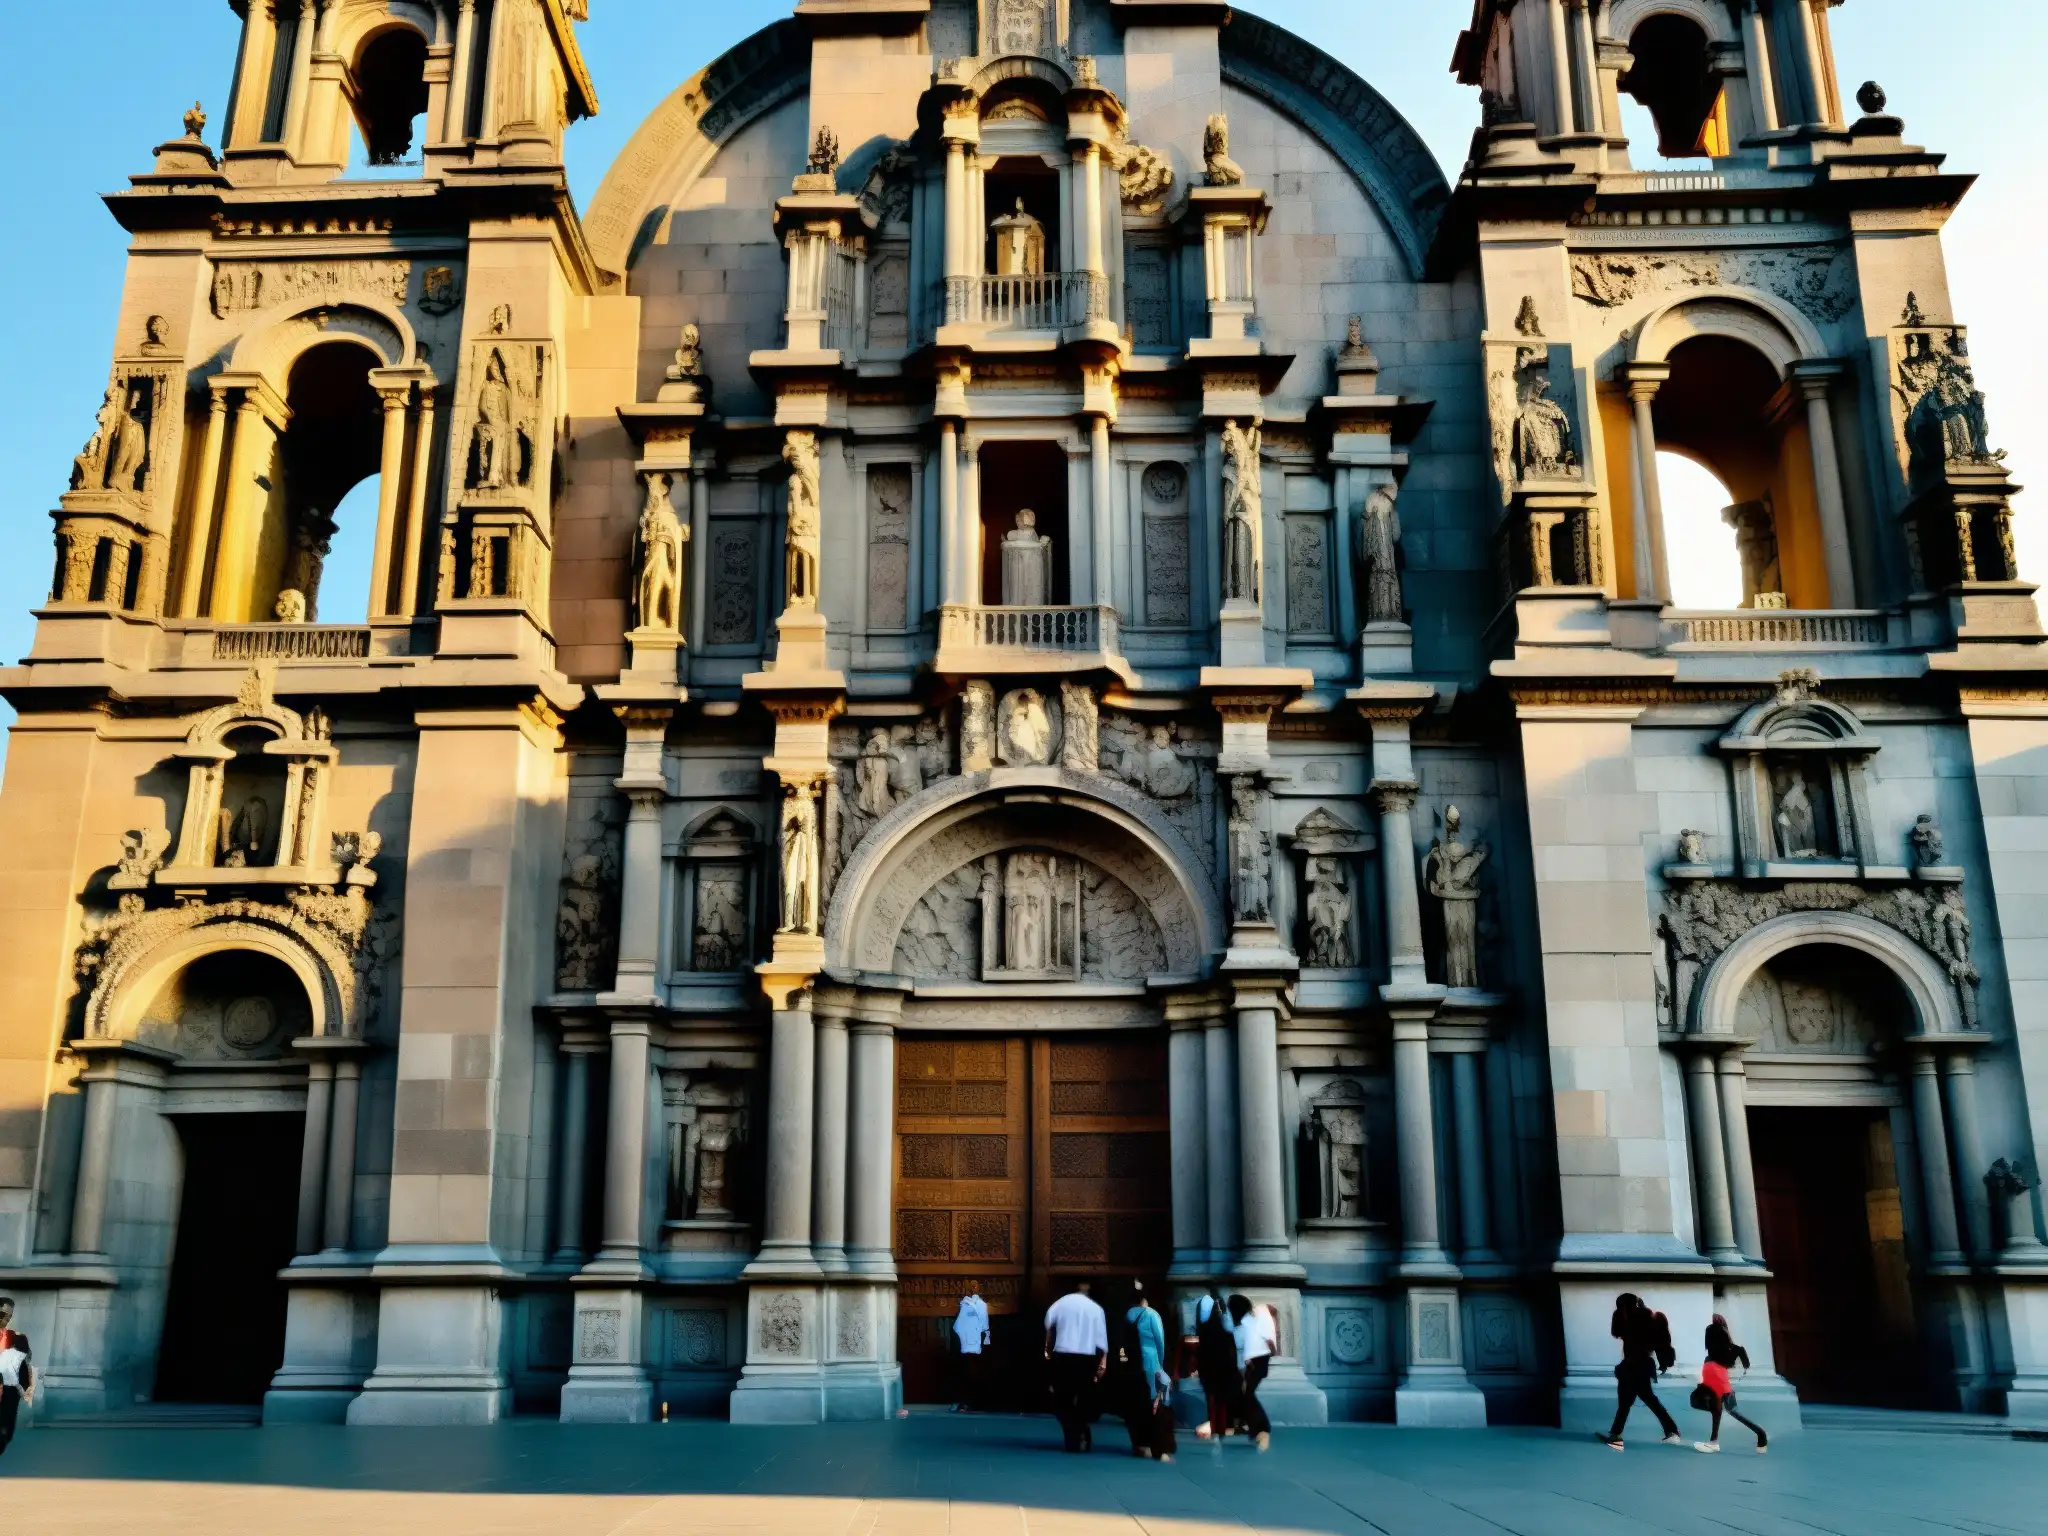 Vista cercana de la fachada de la Catedral de la Ciudad de México con detalles tallados y estatuas